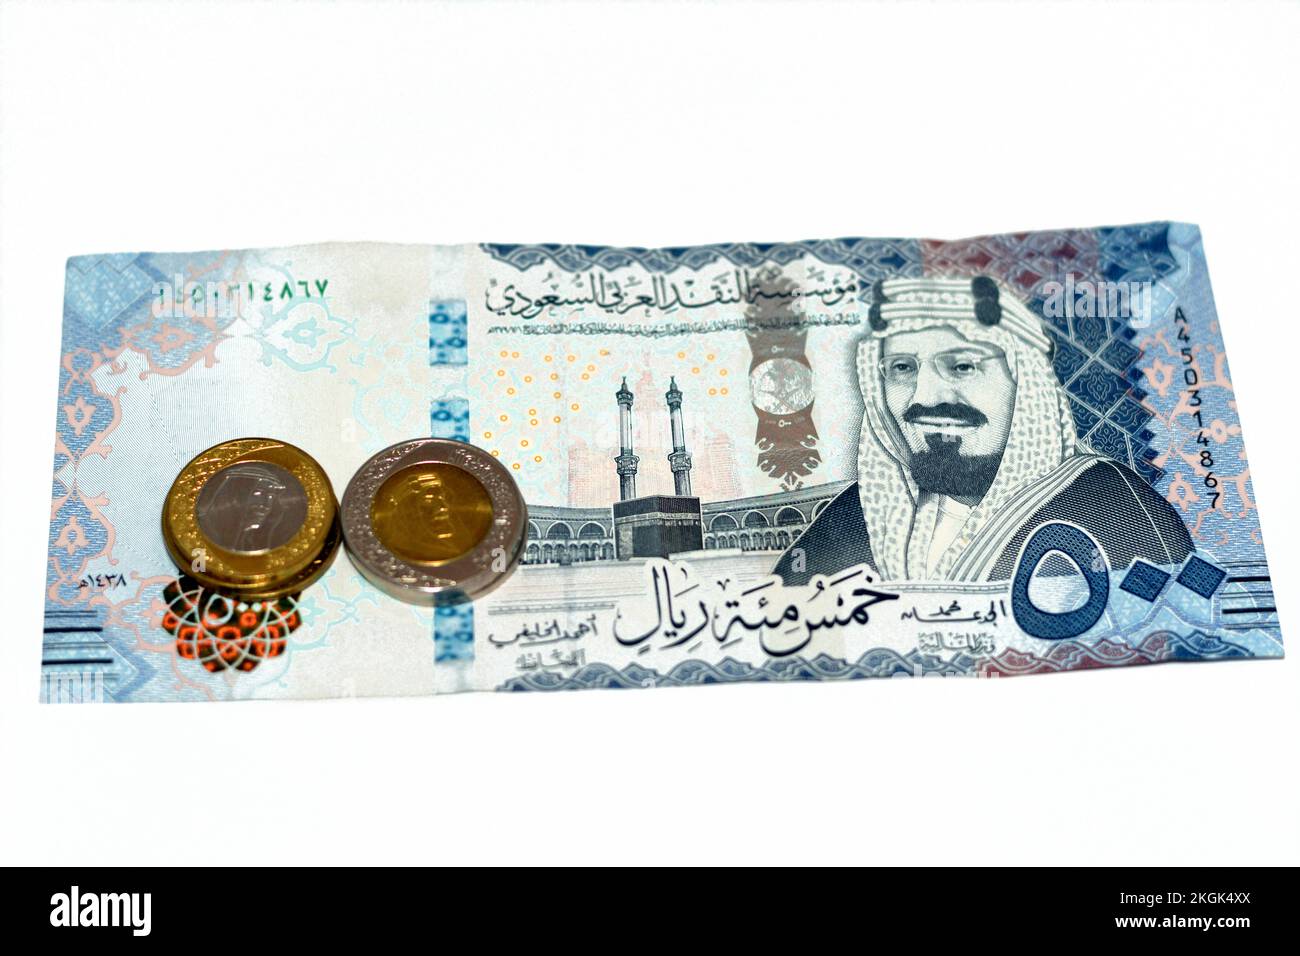 Lato opposto di 500 SAR cinquecento Arabia Saudita banconota riyals denaro contante caratteristiche re Abdulaziz al Saud e Kaaba con cambio di moneta riyal Saudita Foto Stock